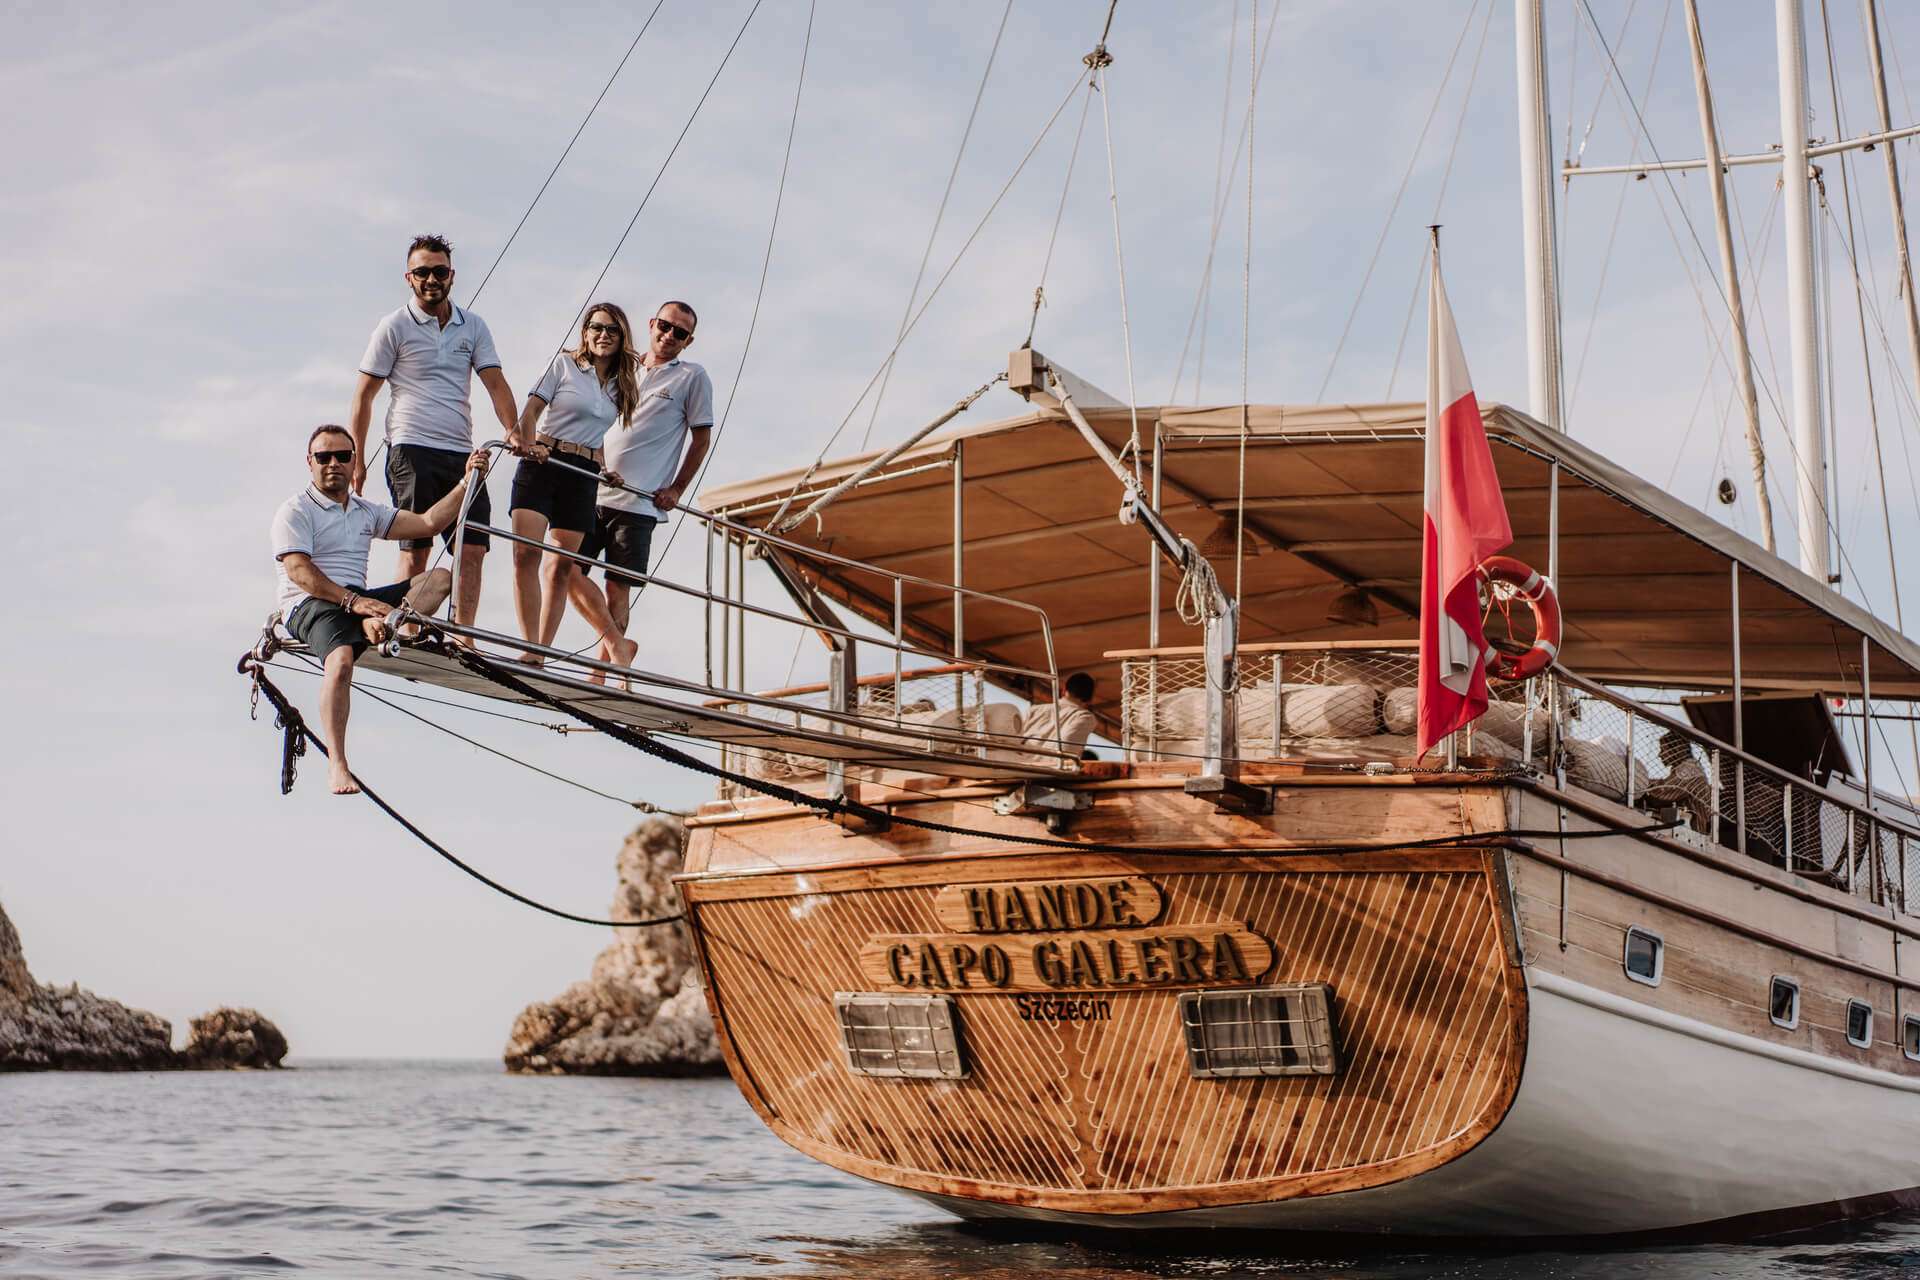 Yacht Charter Hande Capo Galera Crew